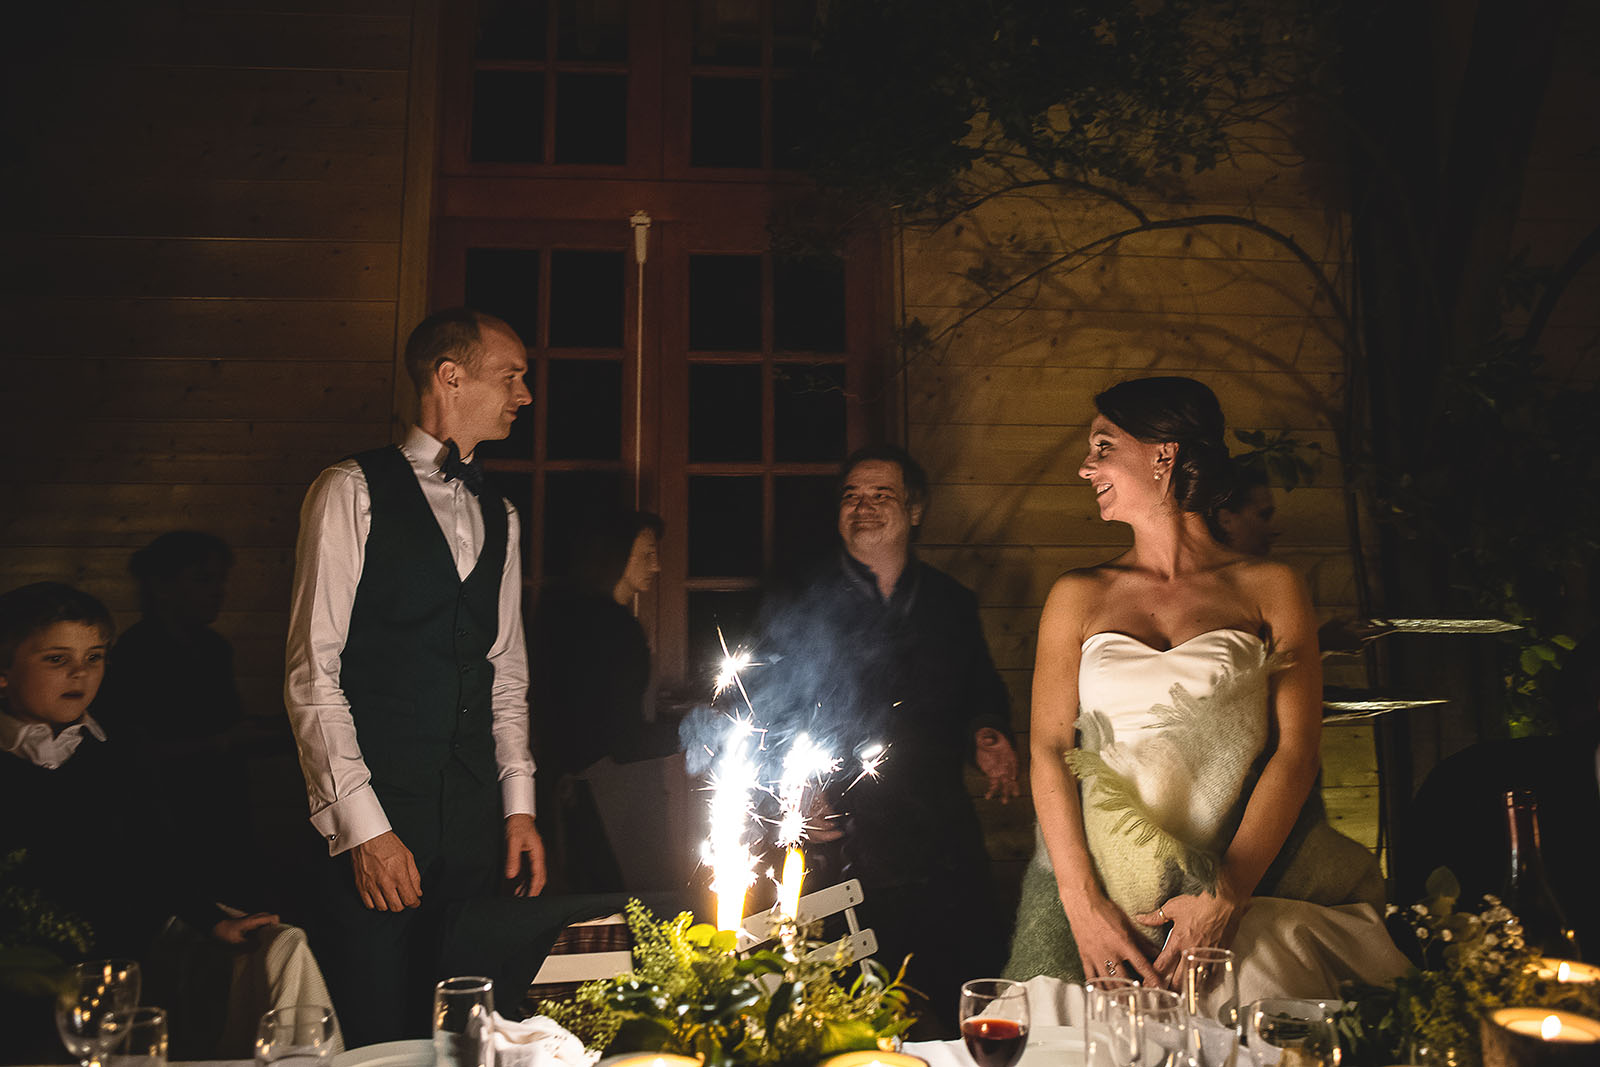 Mariage Manoir des Prévanches. David Pommier photographe de mariage. Les mariés devant le gâteau